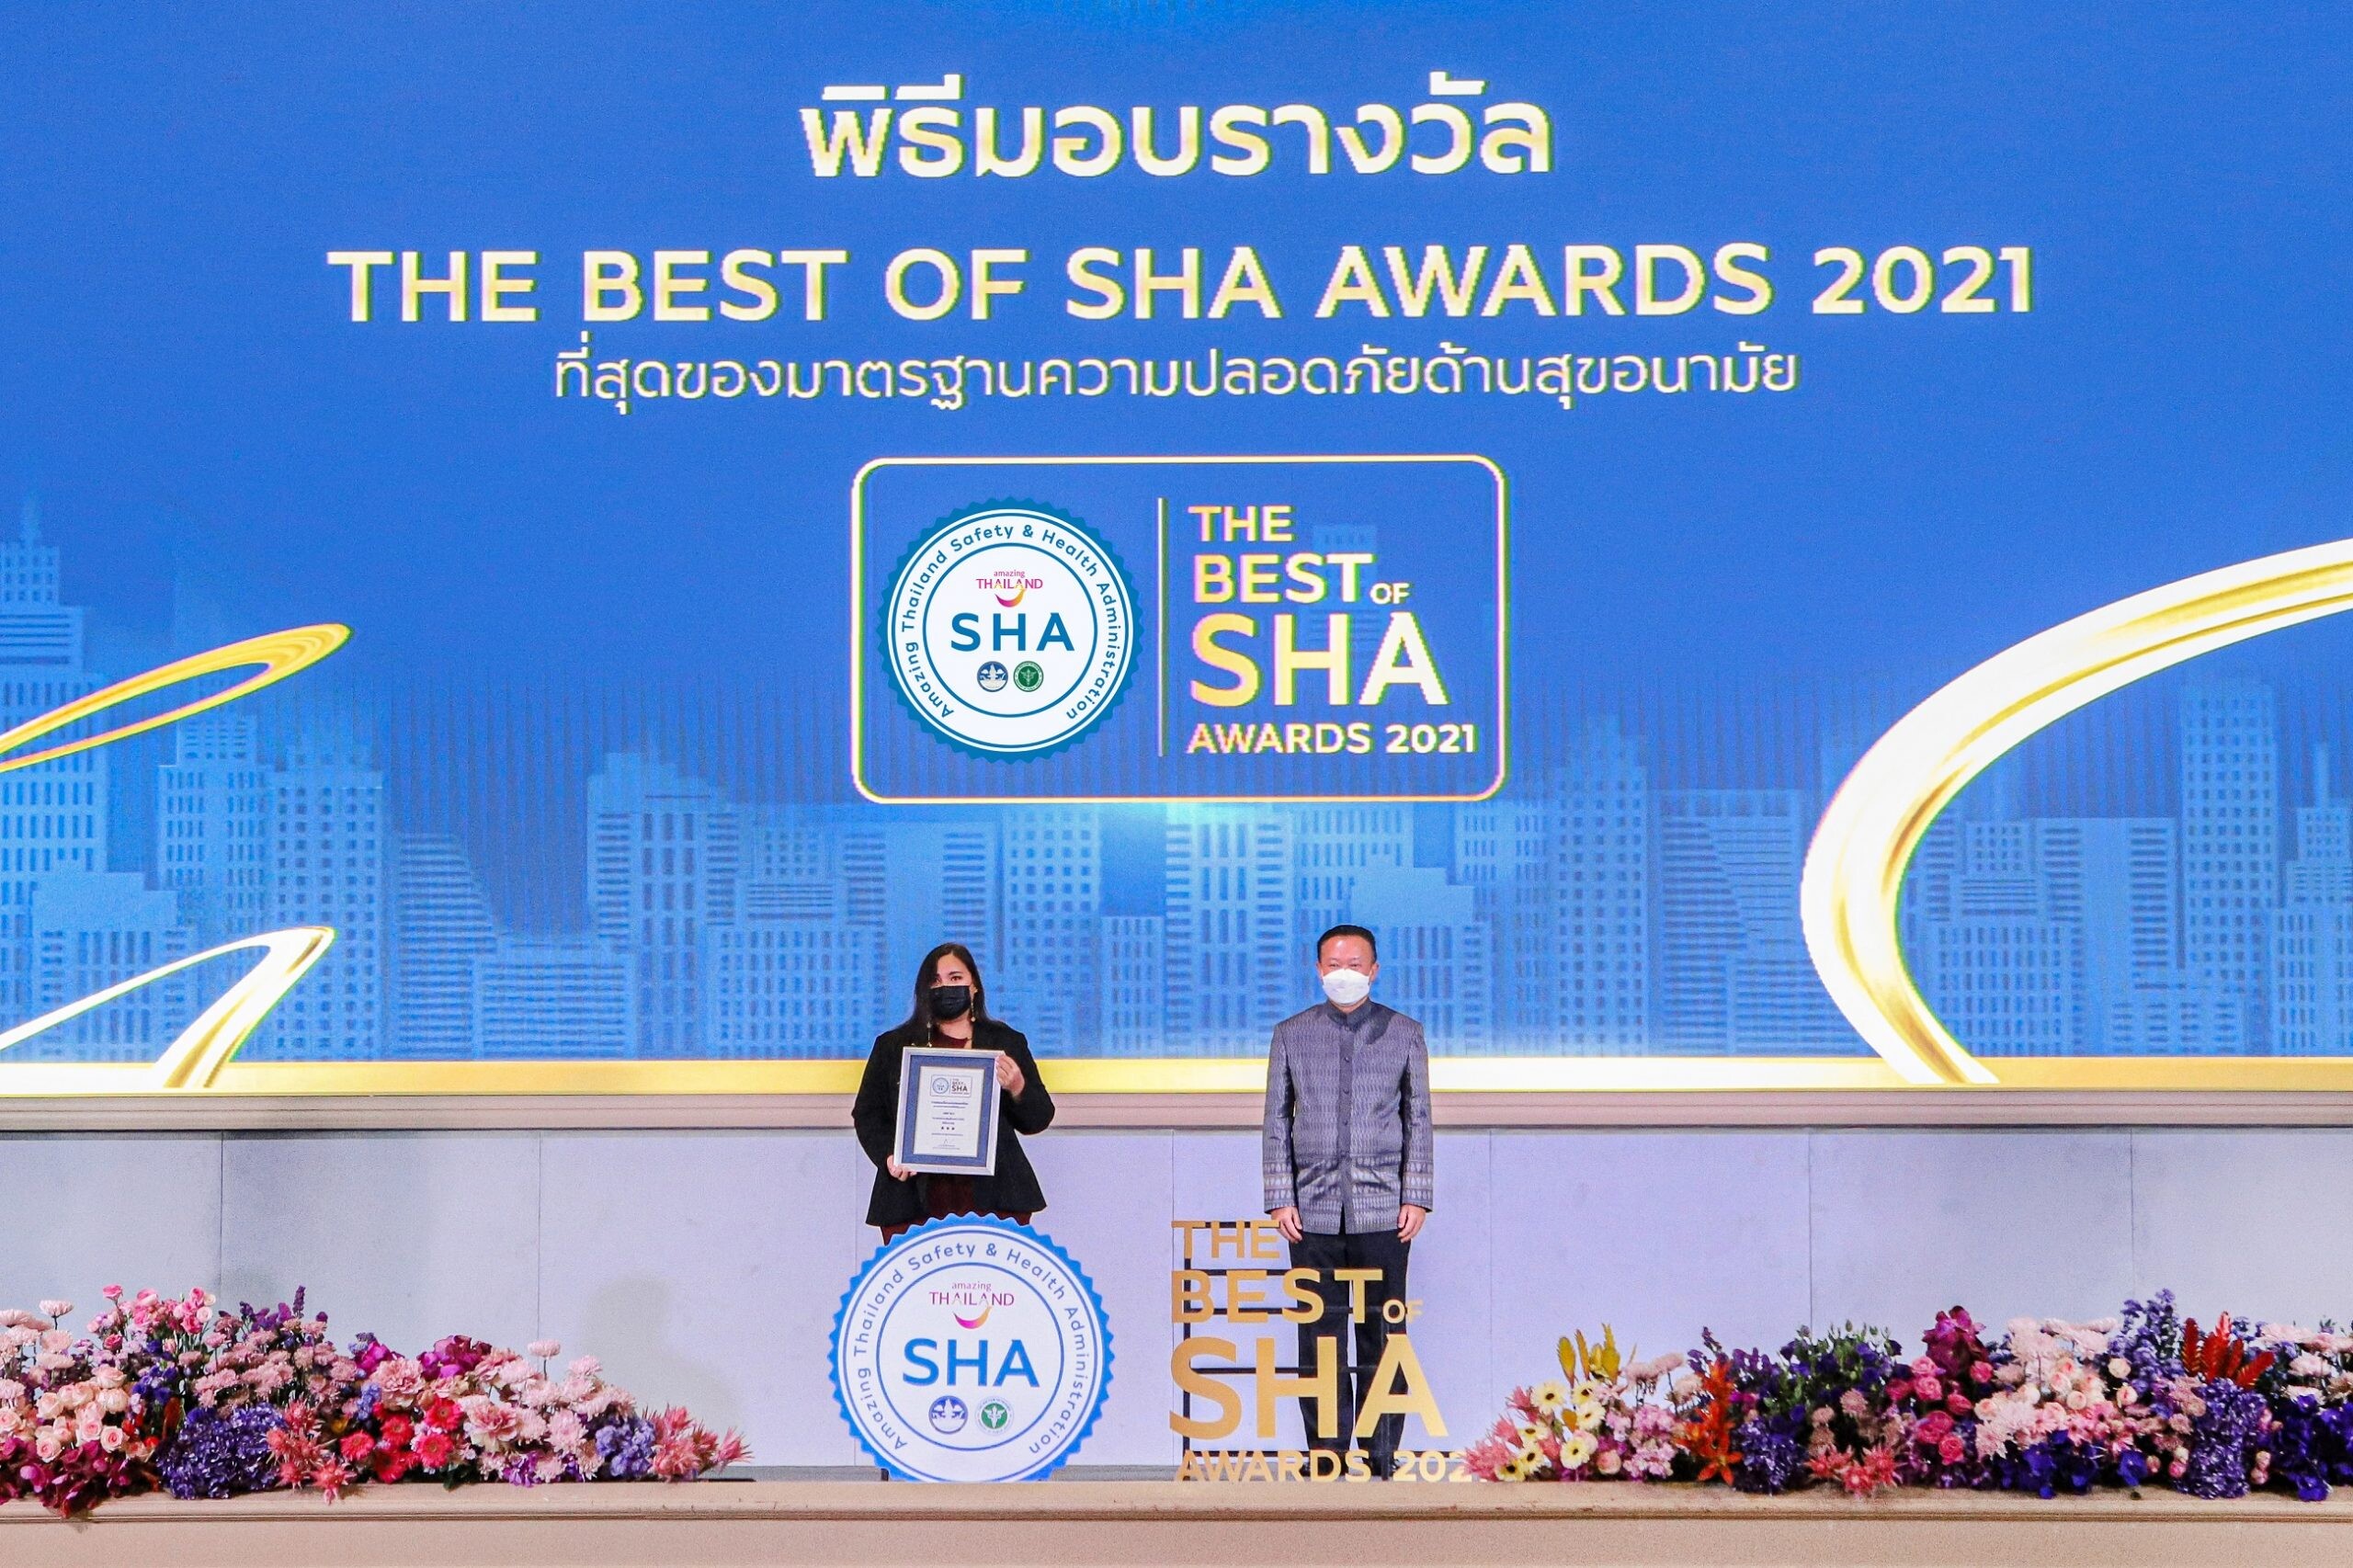 รอยัล คลิฟ พัทยาคว้ารางวัลสุดยอดสถานประกอบการมาตรฐานความปลอดภัยด้านสุขอนามัย "THE BEST OF SHA AWARDS 2021" หนึ่งเดียวในประเทศไทย